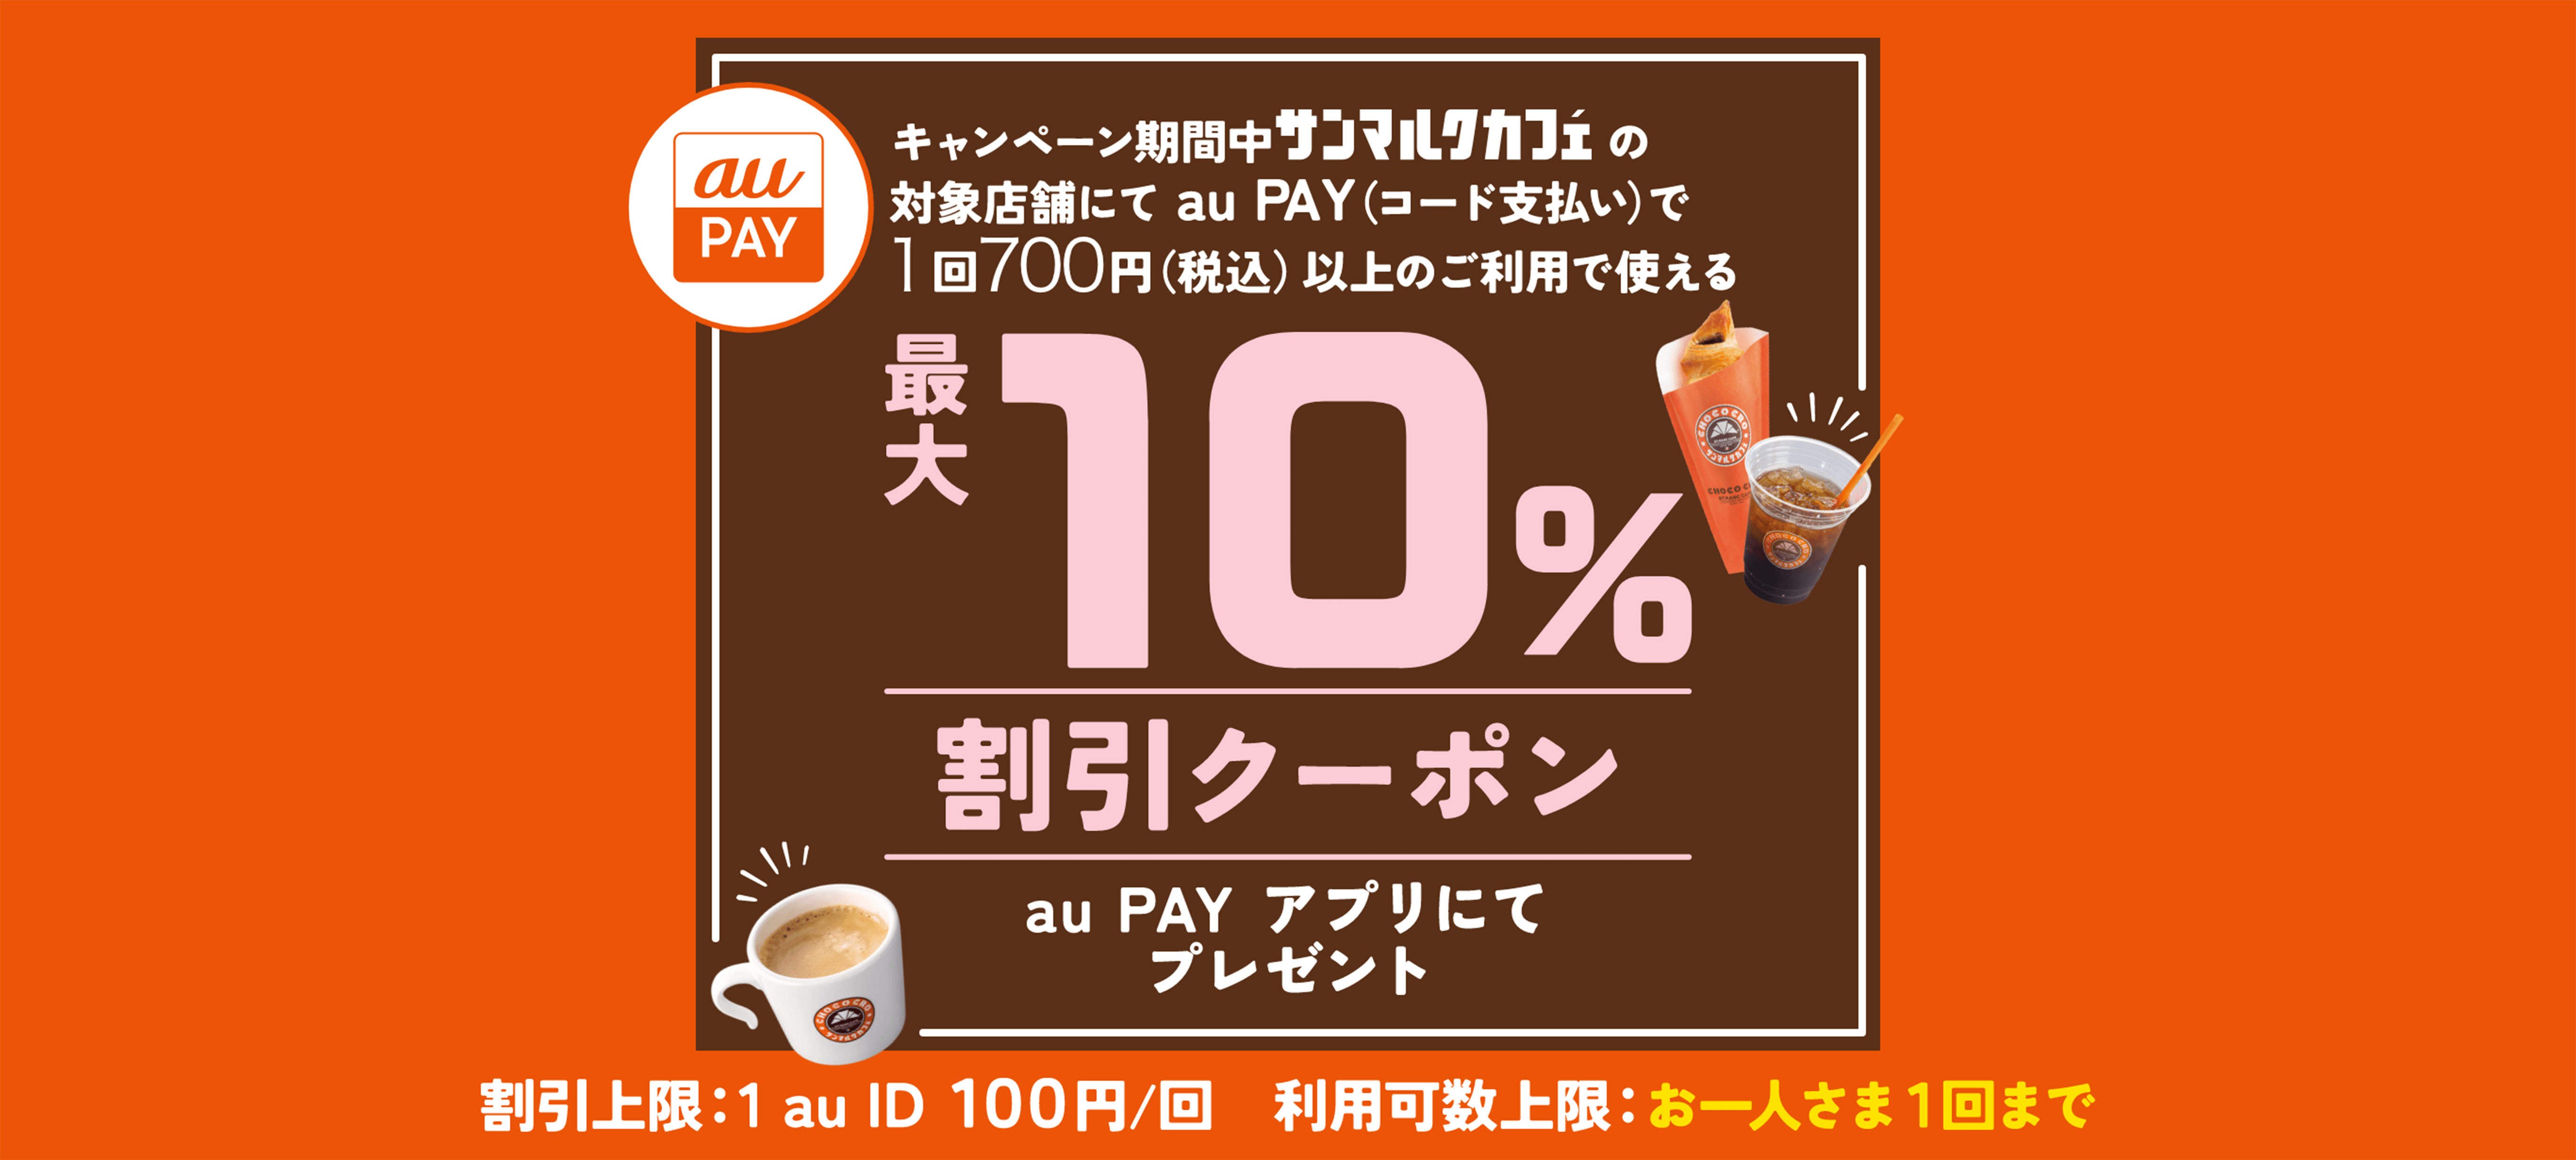 キャンペーン期間中サンマルクカフェの対象店舗にてau PAY（コード支払い）で1回700円（税込）以上のご利用で使える最大10%割引クーポンau PAYアプリにてプレゼント